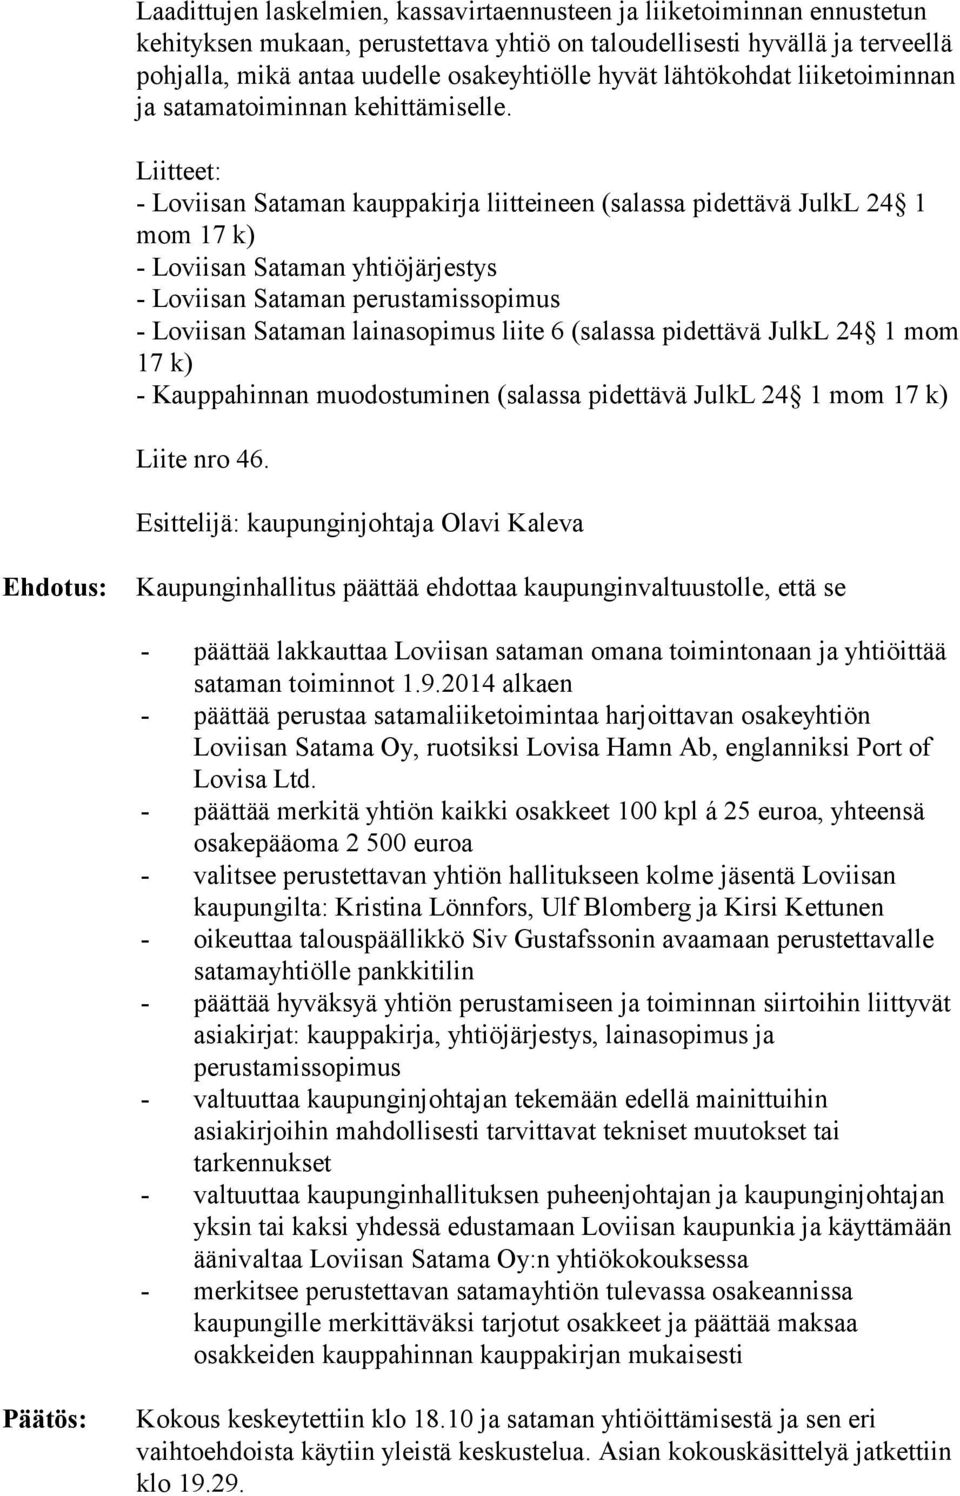 Liitteet: - Loviisan Sataman kauppakirja liitteineen (salassa pidettävä JulkL 24 1 mom 17 k) - Loviisan Sataman yhtiöjärjestys - Loviisan Sataman perustamissopimus - Loviisan Sataman lainasopimus